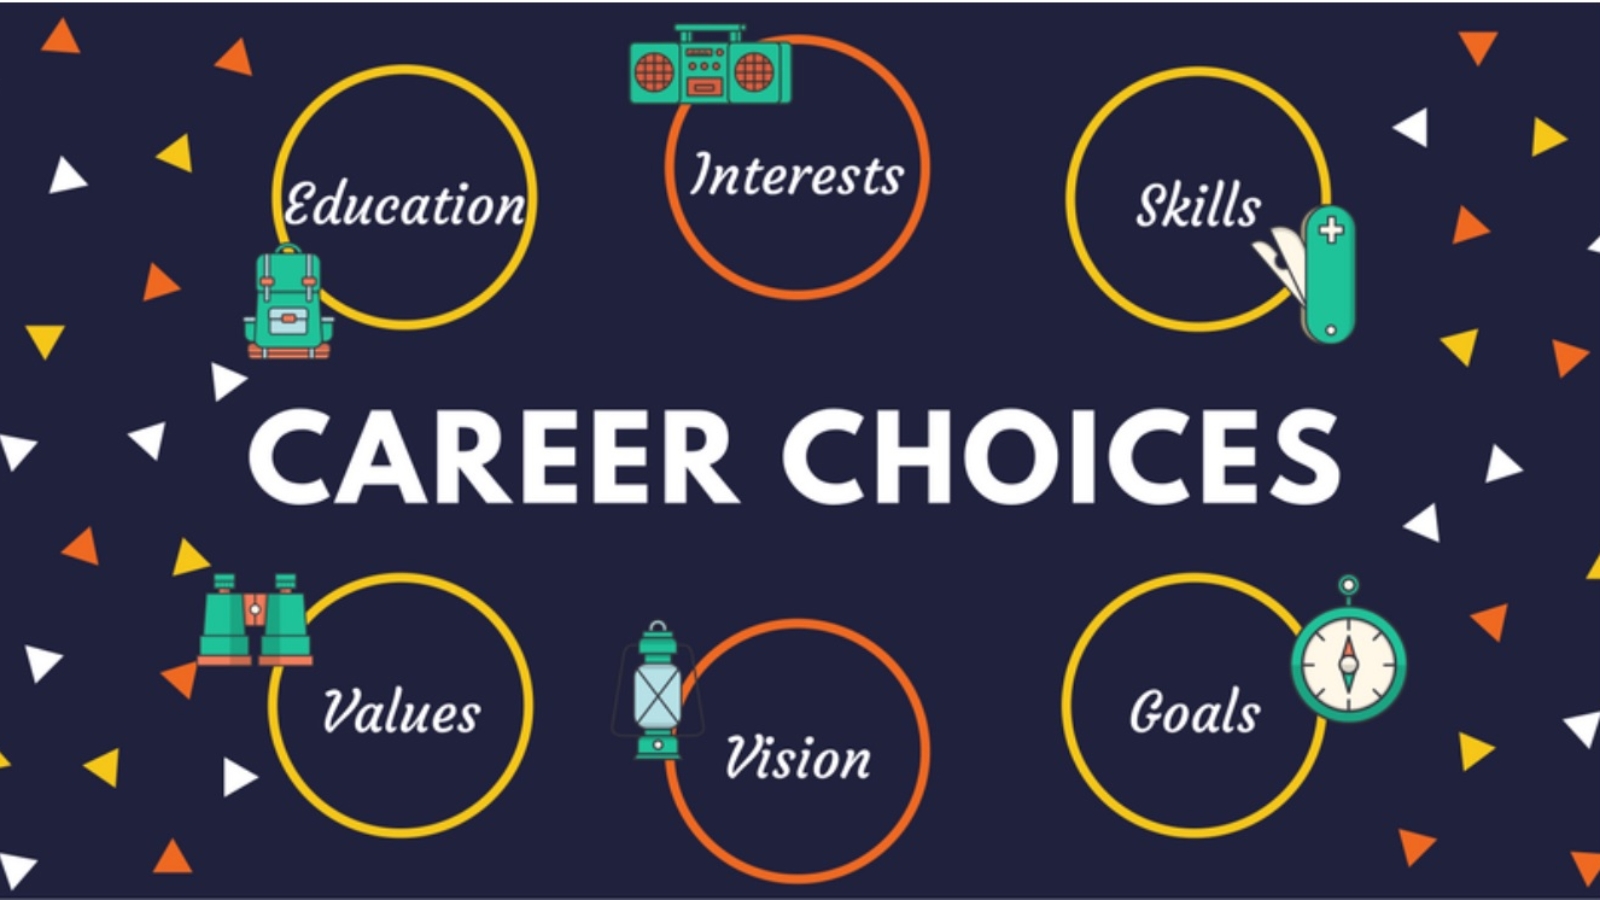 presentation on career choice